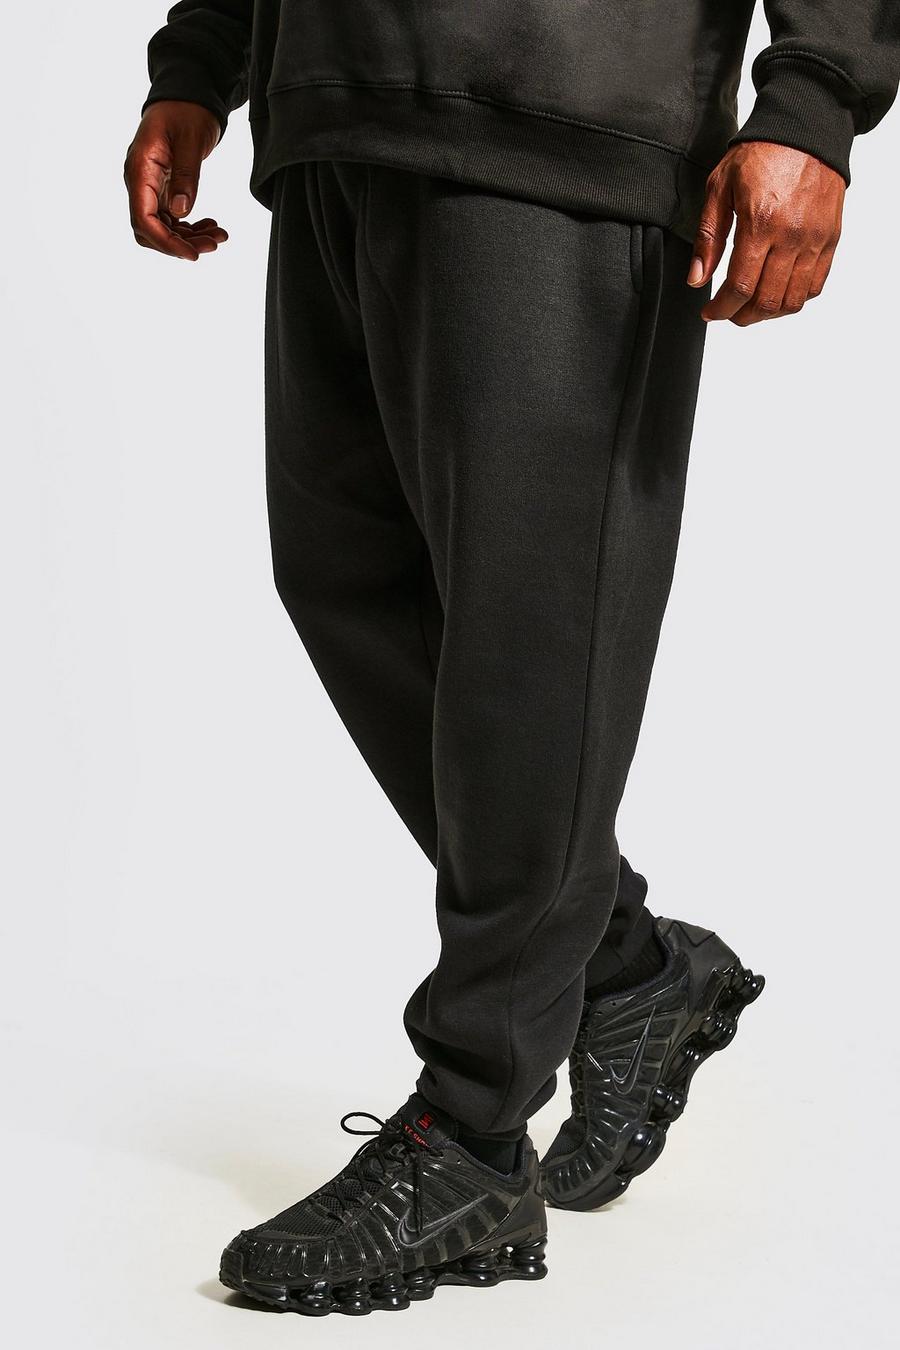 Pantaloni tuta Plus Size Basic Skinny Fit, Black nero